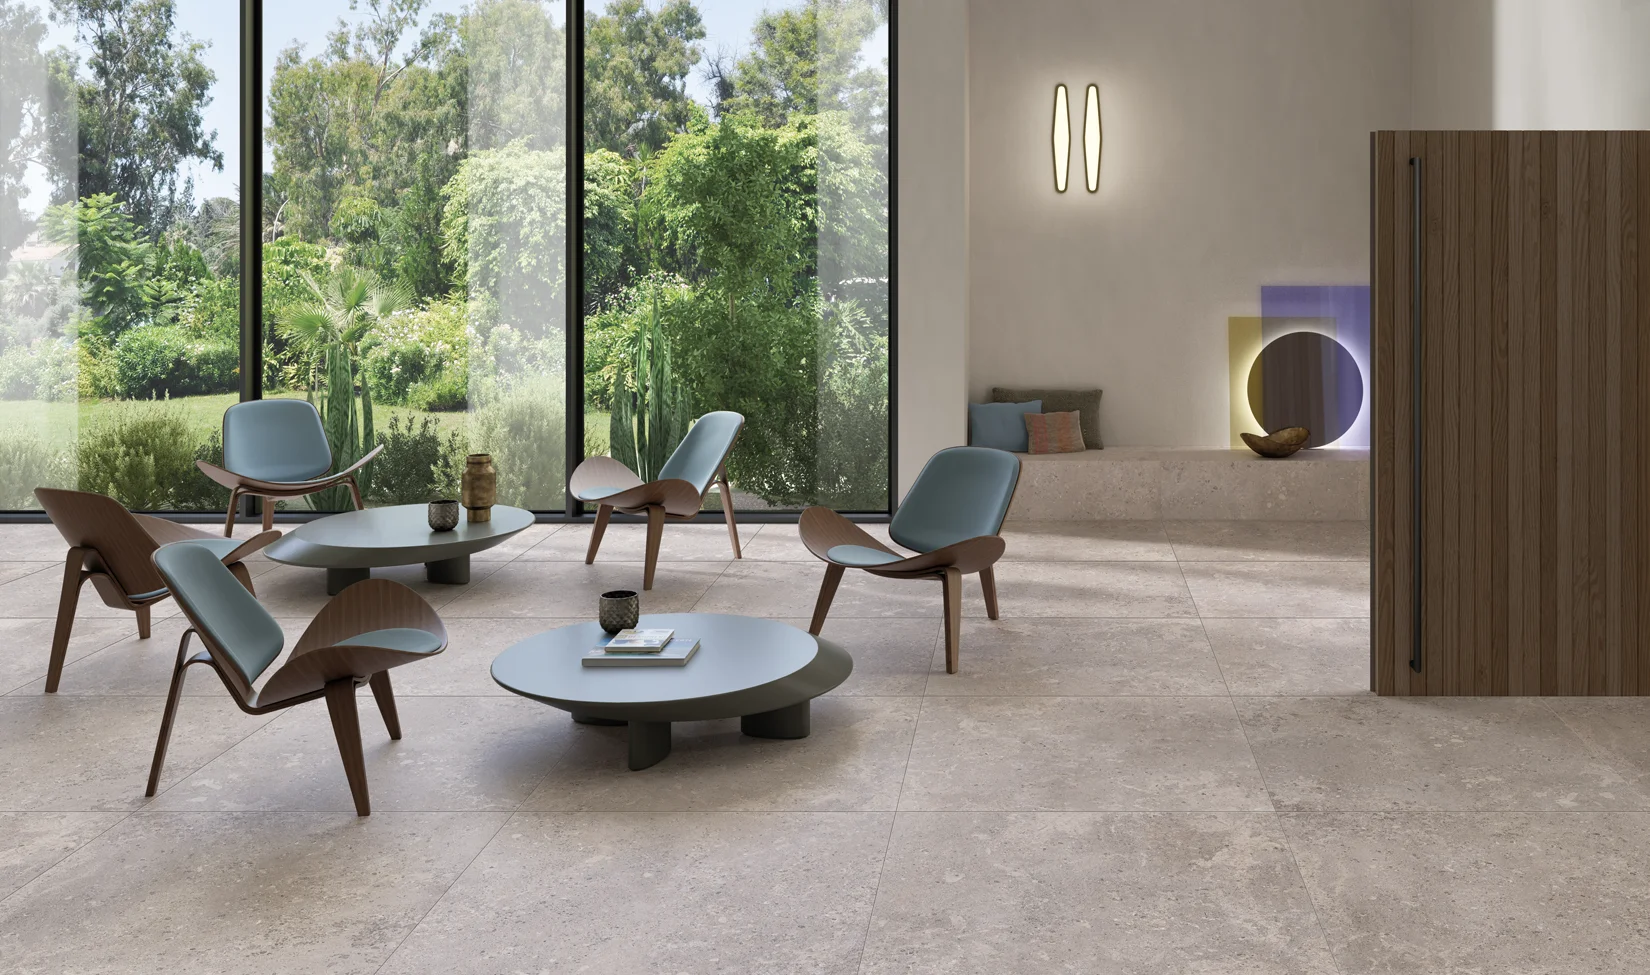 Interni moderni con pavimento in pietra grigia della collezione Omnia colore Devix Greige, arredamento minimalista e vista sul giardino attraverso ampie vetrate.